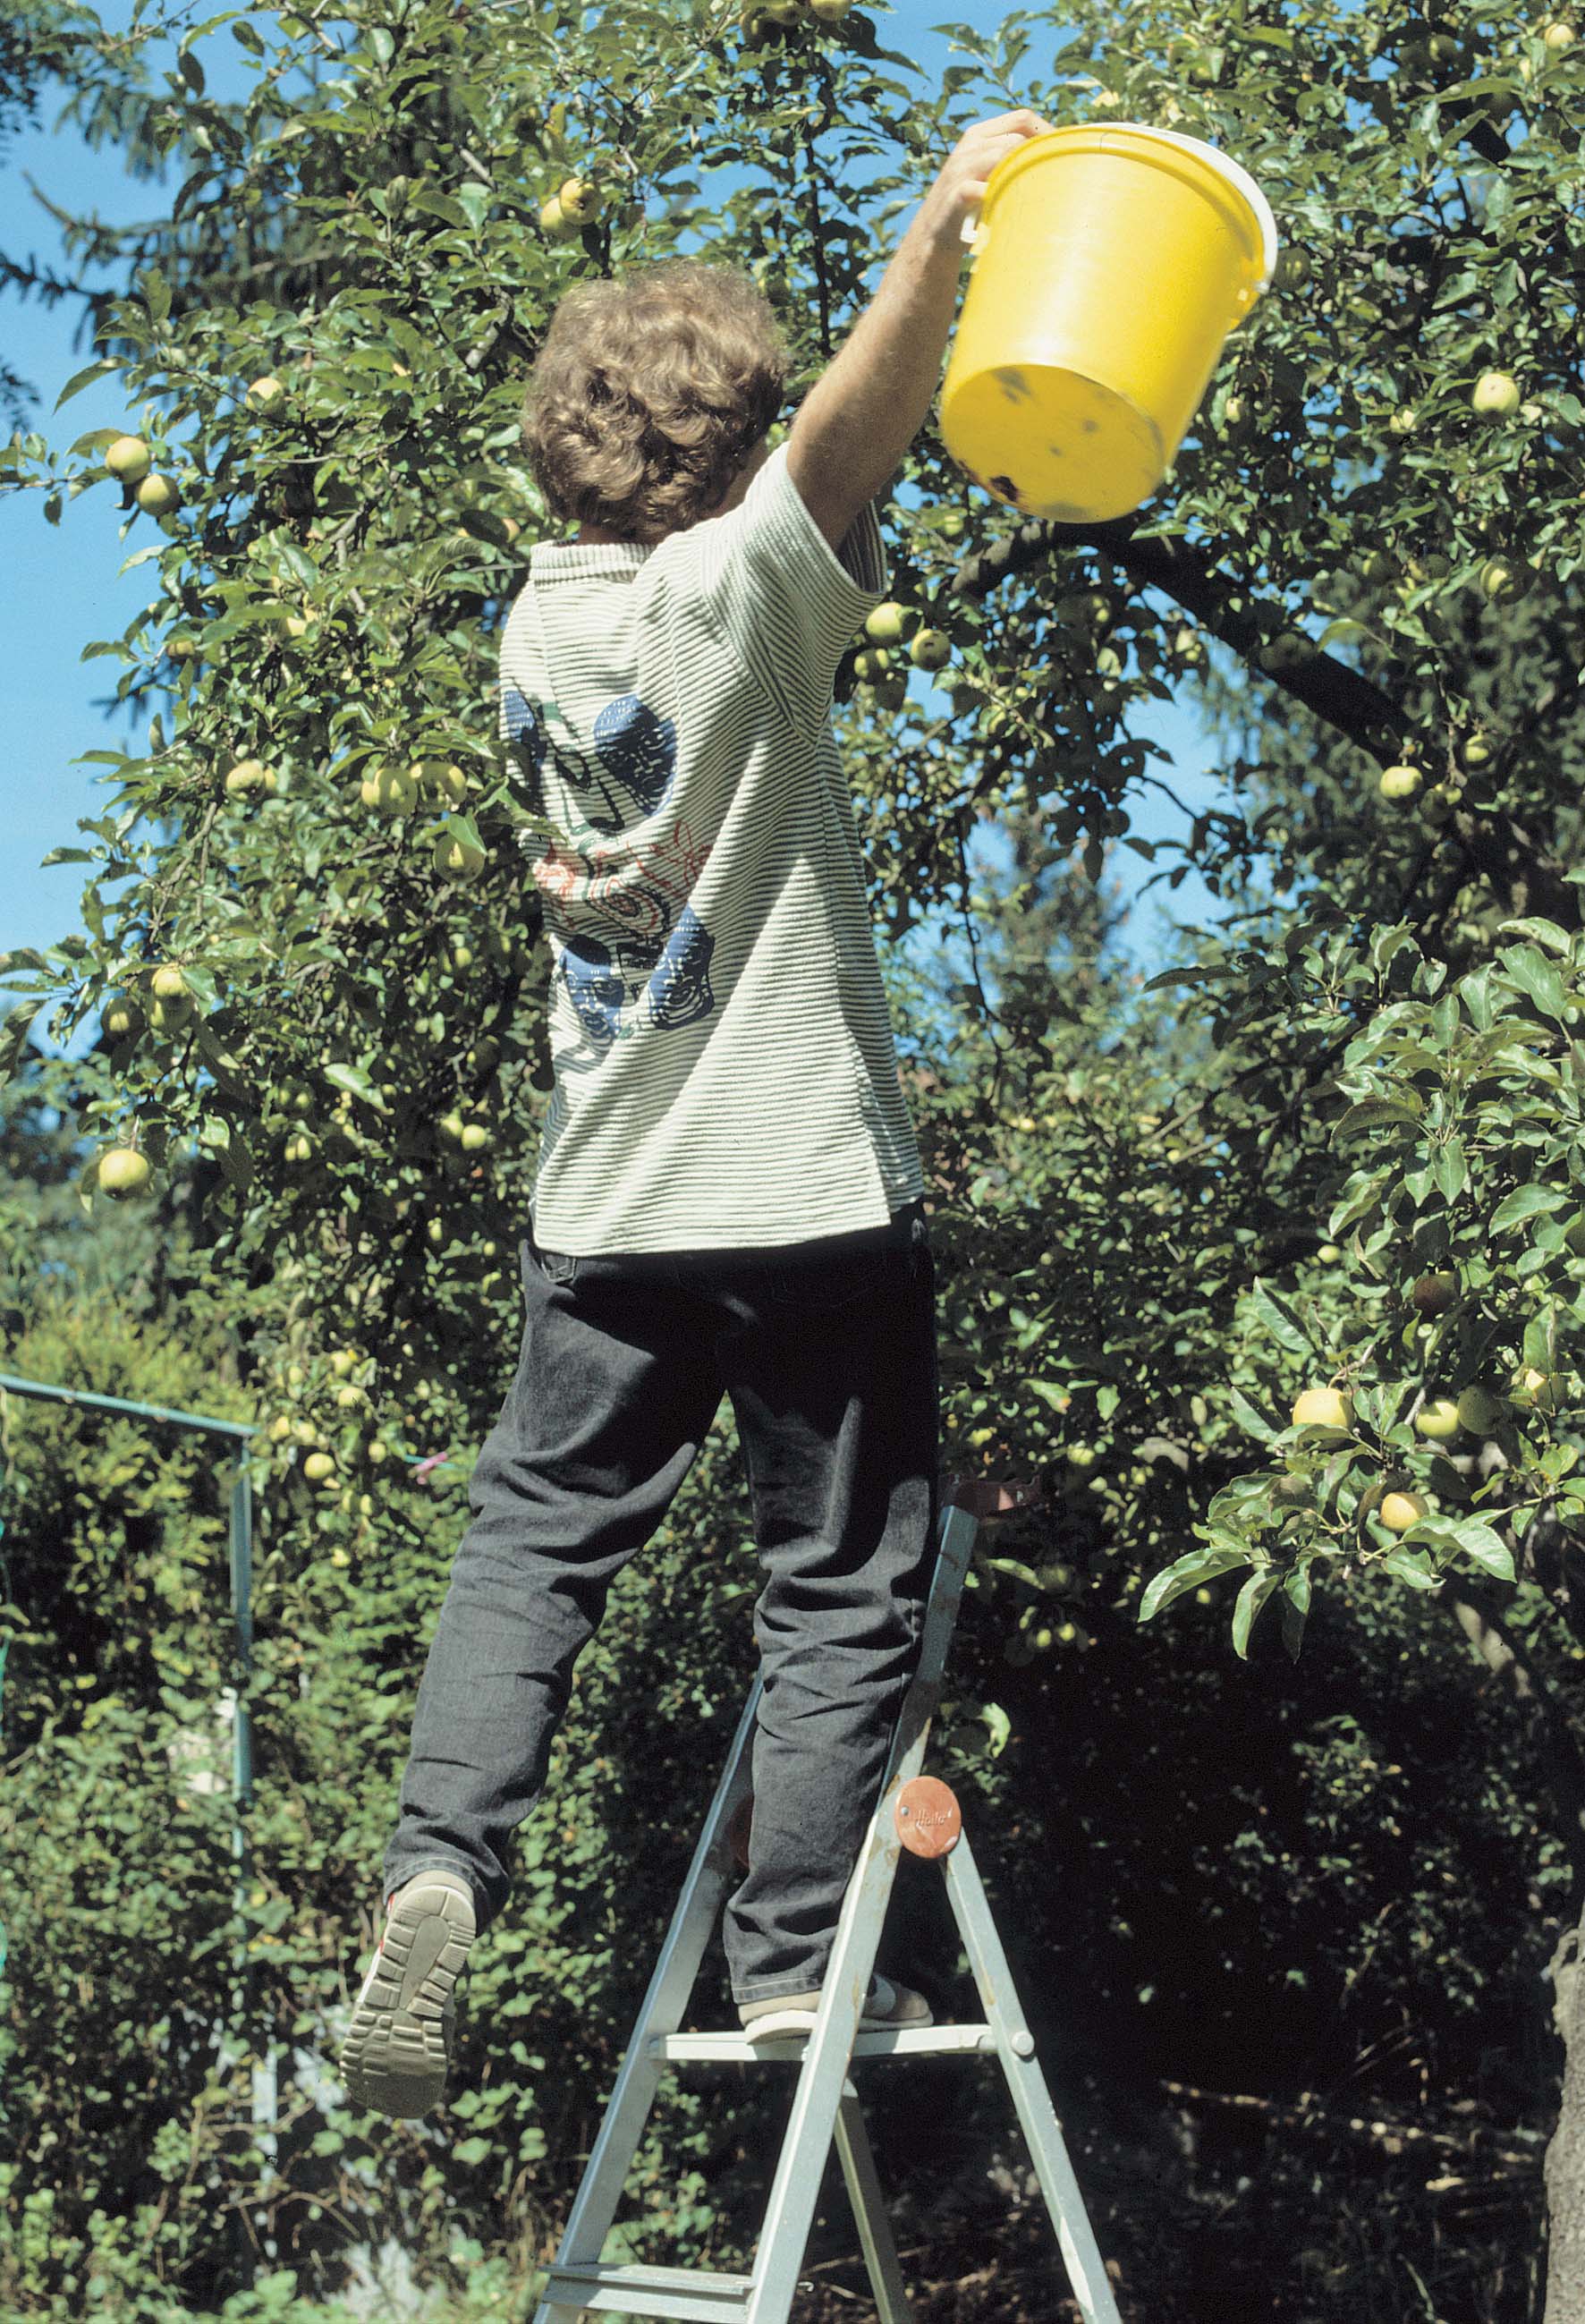 Obstpflücker auf Leiter kippelt